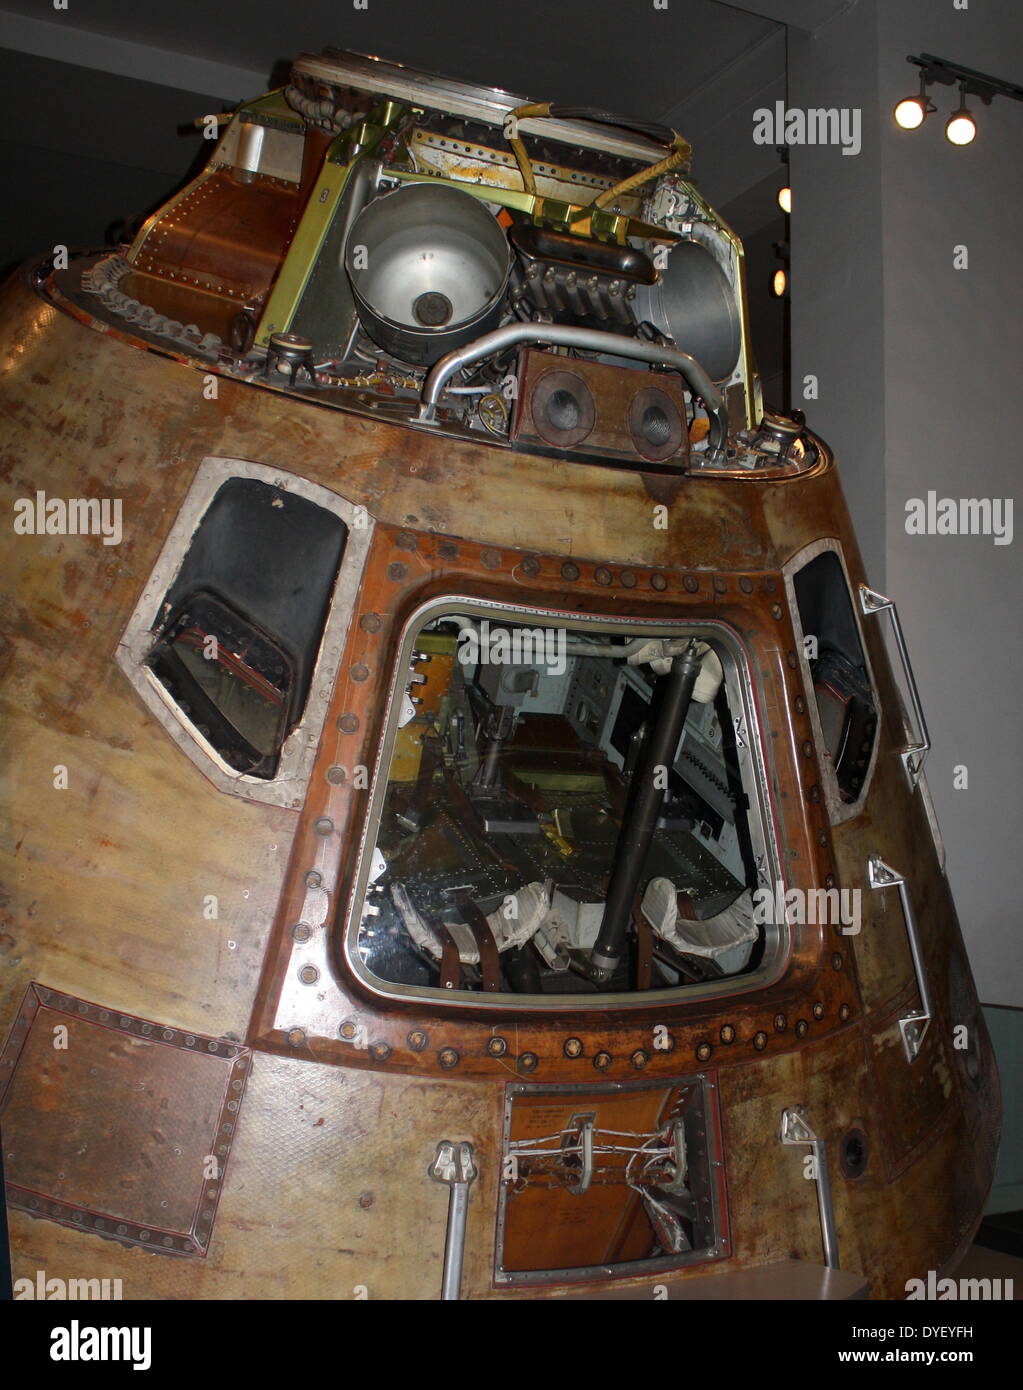 Module de commande Apollo 10. Circa 1969. La capsule dans laquelle les astronautes Tom Stafford, John Young et Gene Cernan a voyagé autour de la lune en 1969. Apollo 10 est un essai pour l'alunissage qui l'a suivie. Banque D'Images